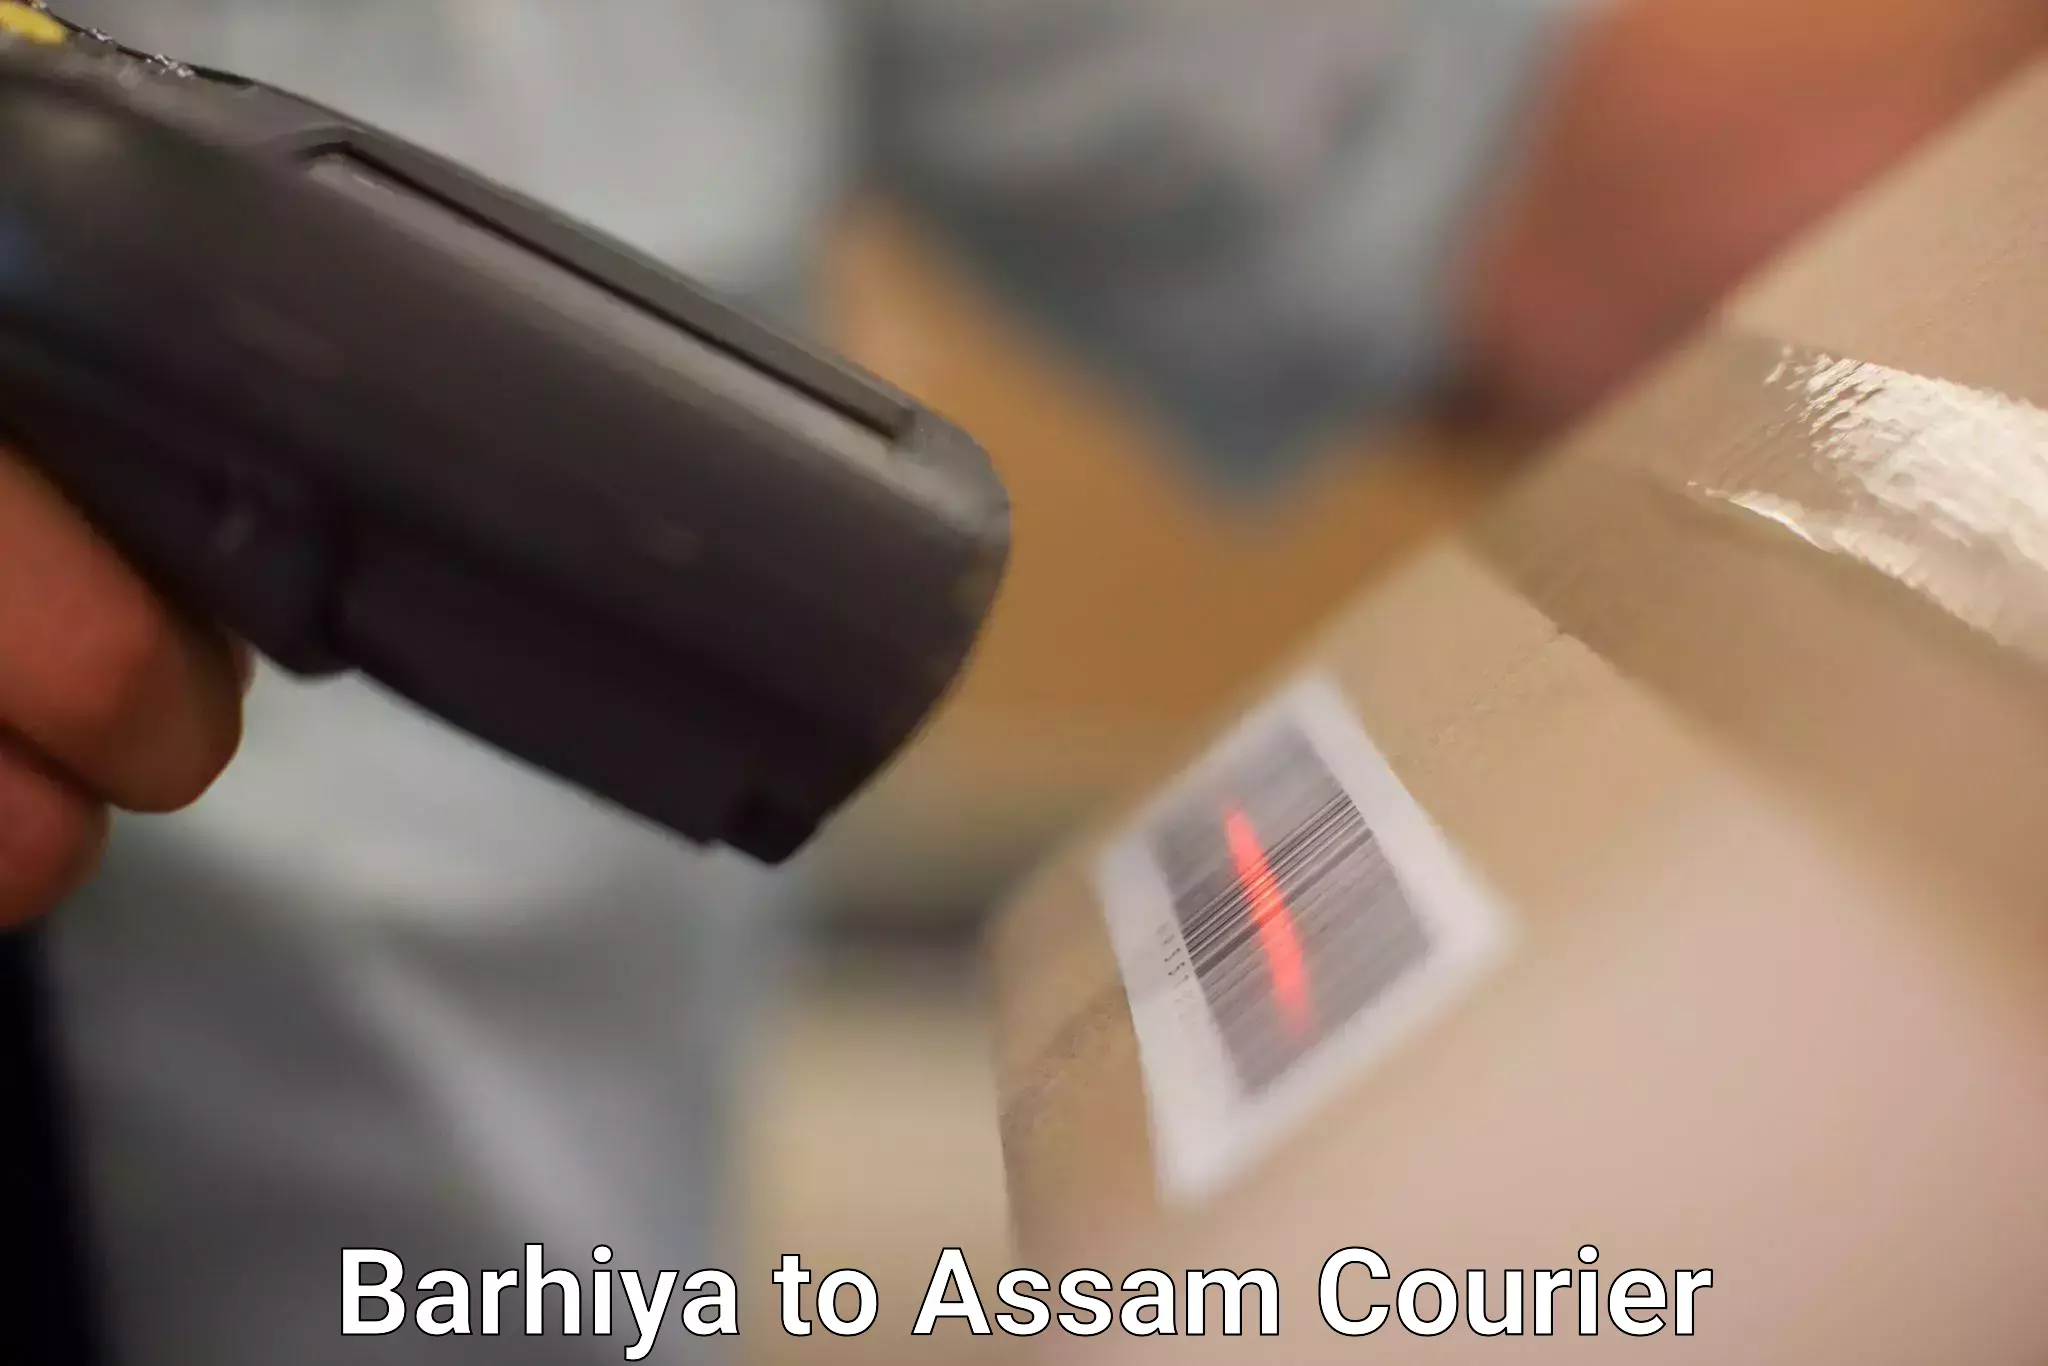 24/7 courier service Barhiya to Bamunimaidan